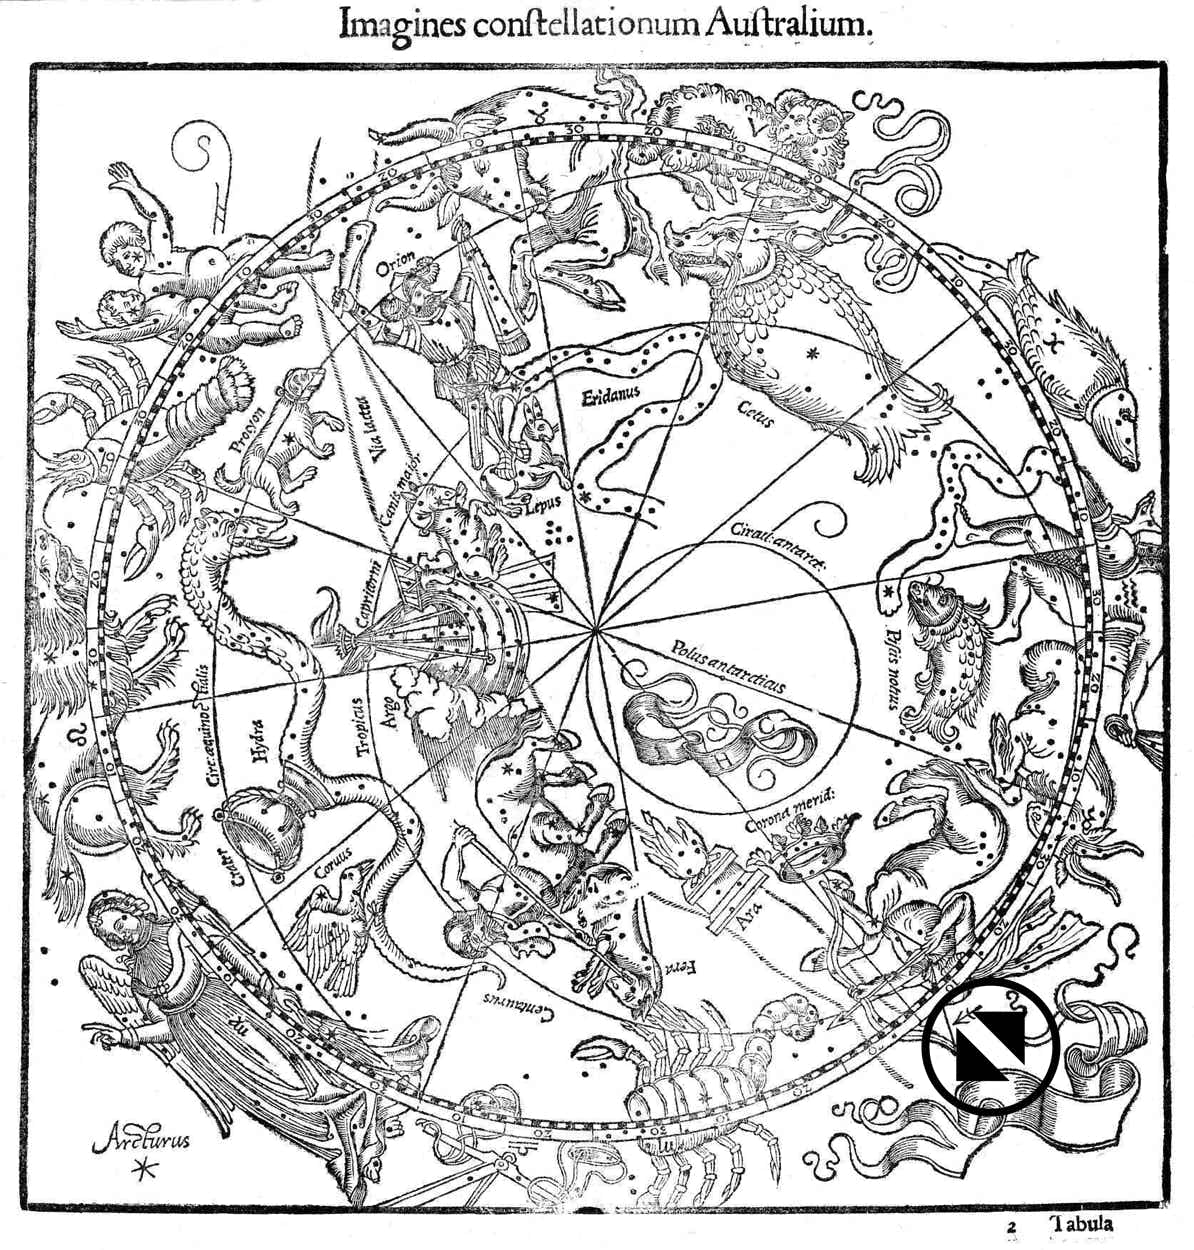 Johannes Honter's south celestial hemisphere of 1532